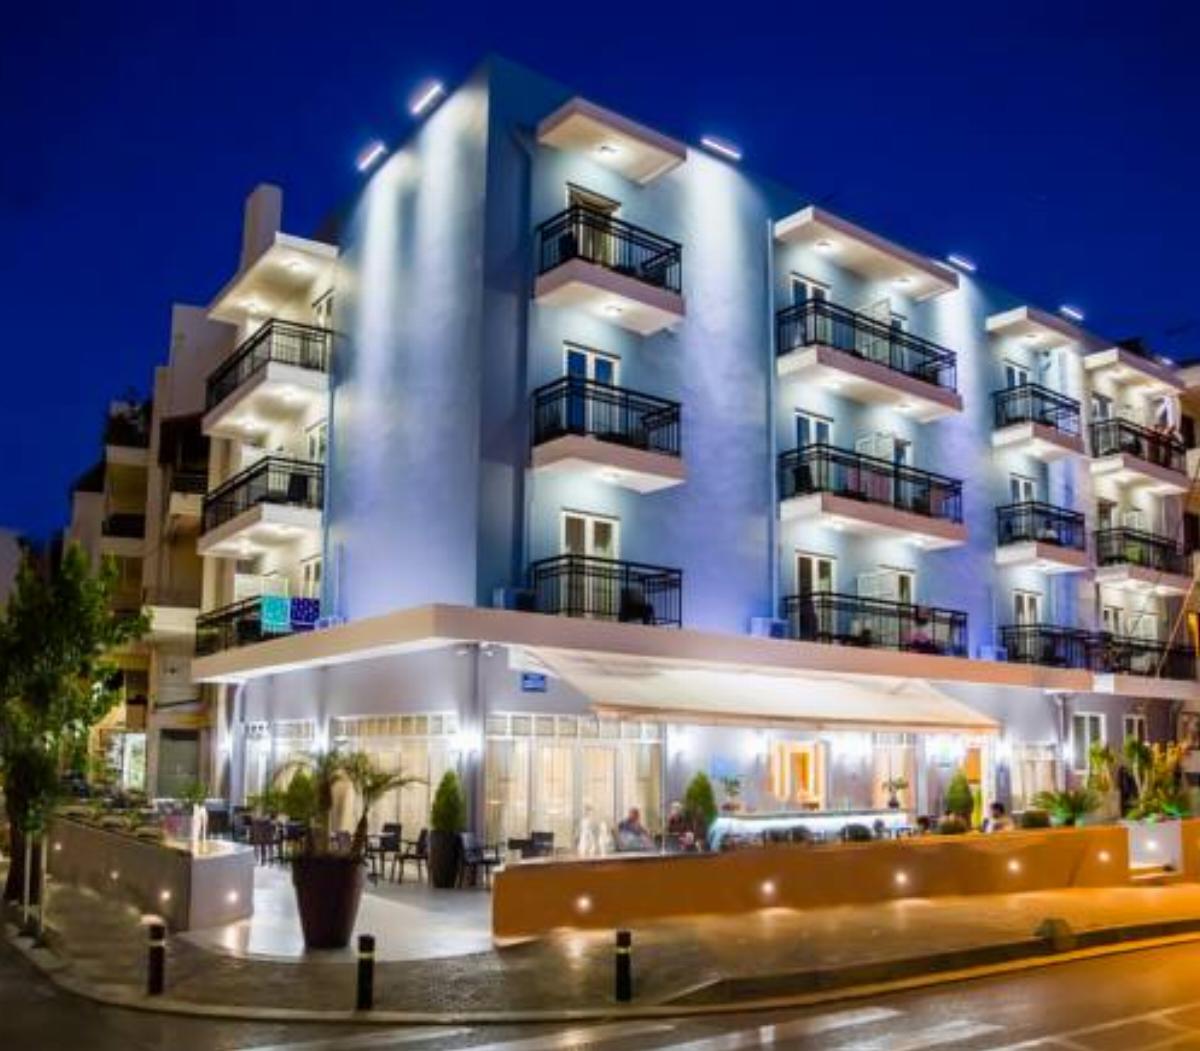 Astali Hotel Hotel Rethymno Town Greece